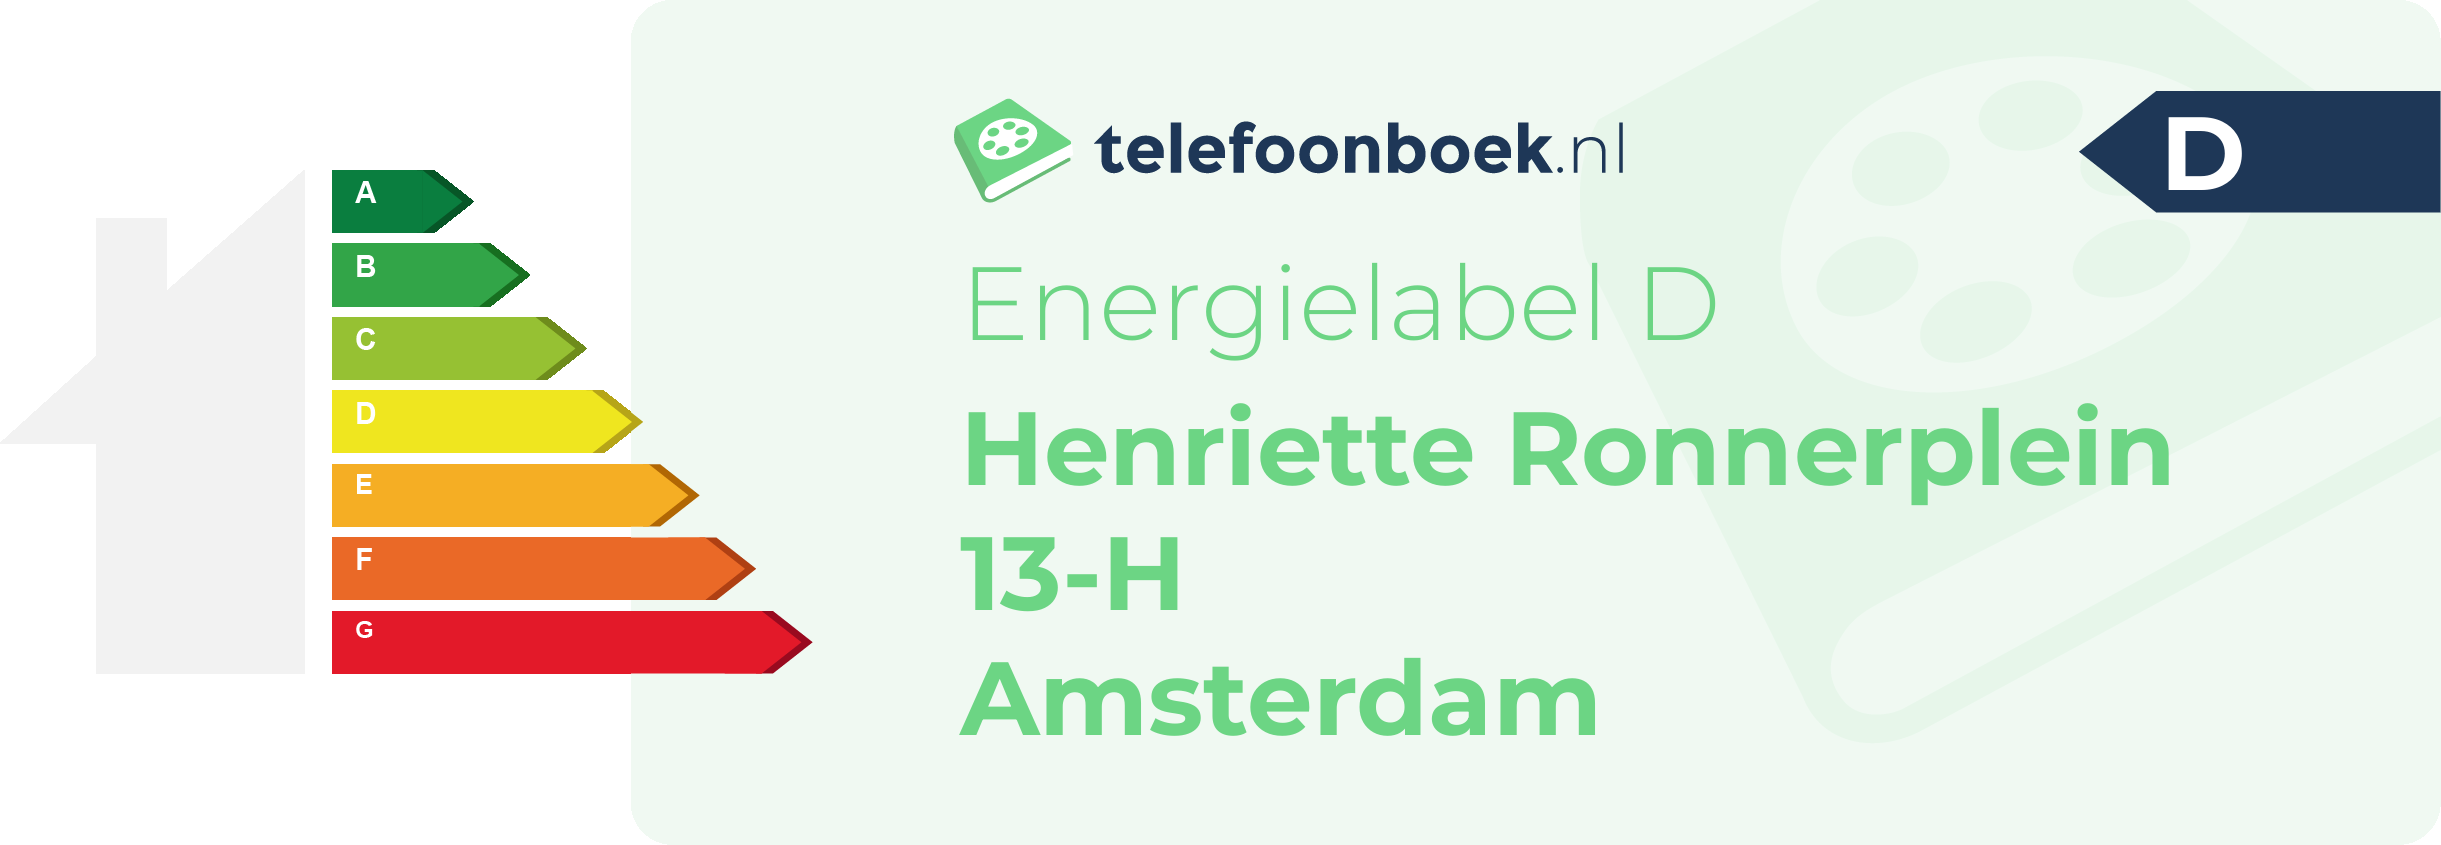 Energielabel Henriette Ronnerplein 13-H Amsterdam